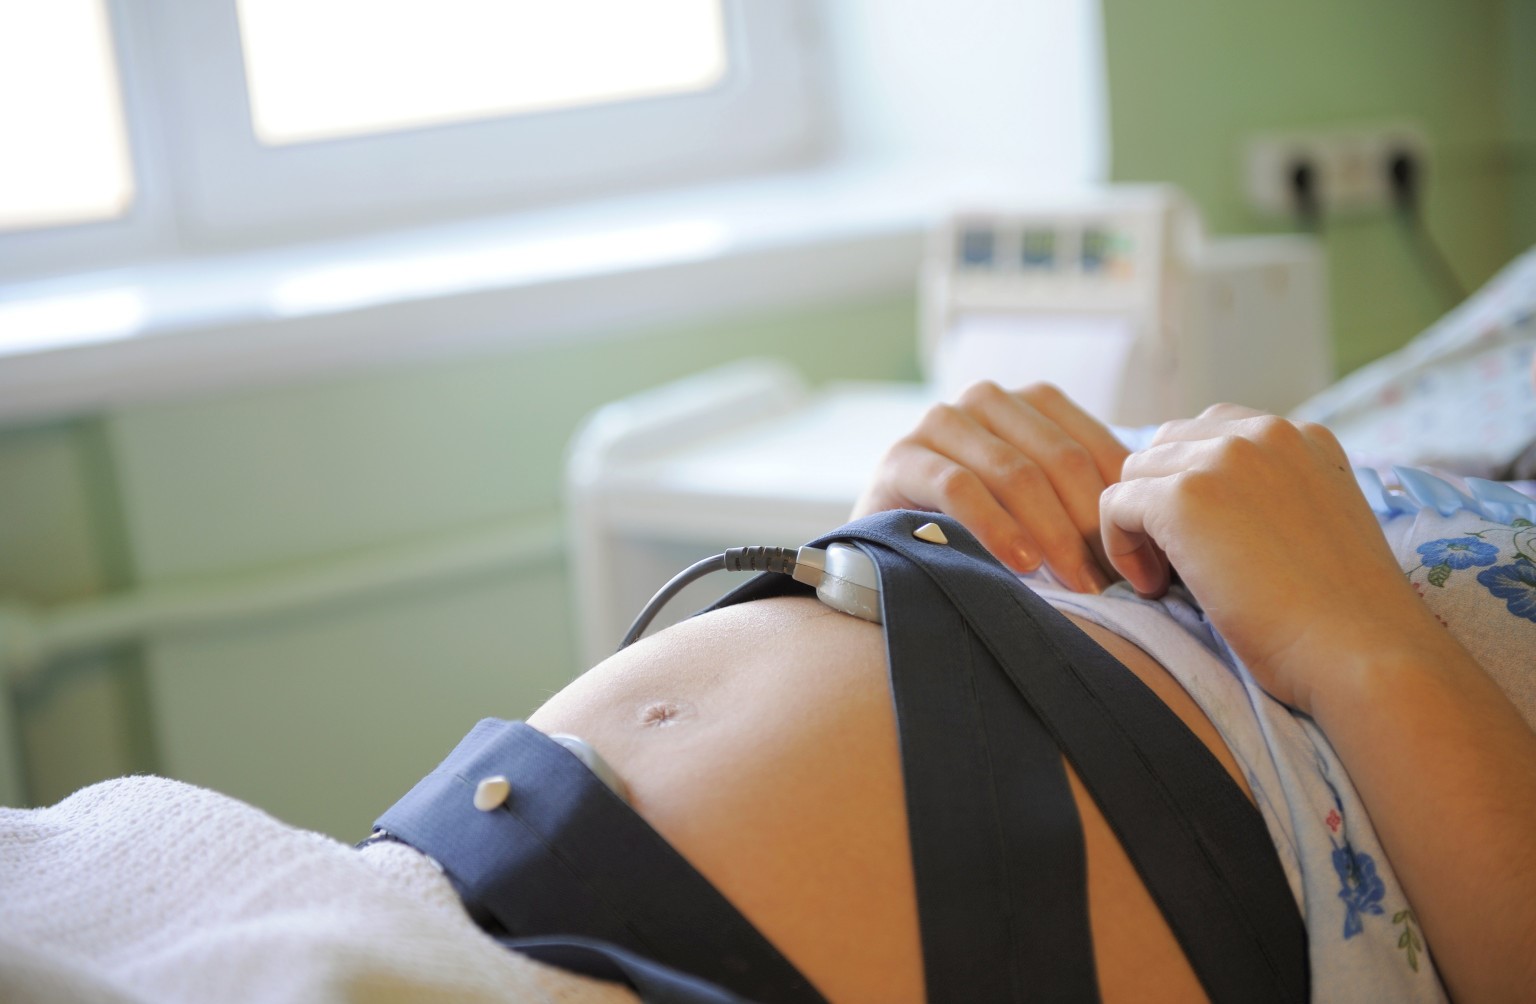 КТГ при беременности: что это, норма, расшифровка, результаты. Что такое кардиотокография (КТГ) при беременности, и как ее делают